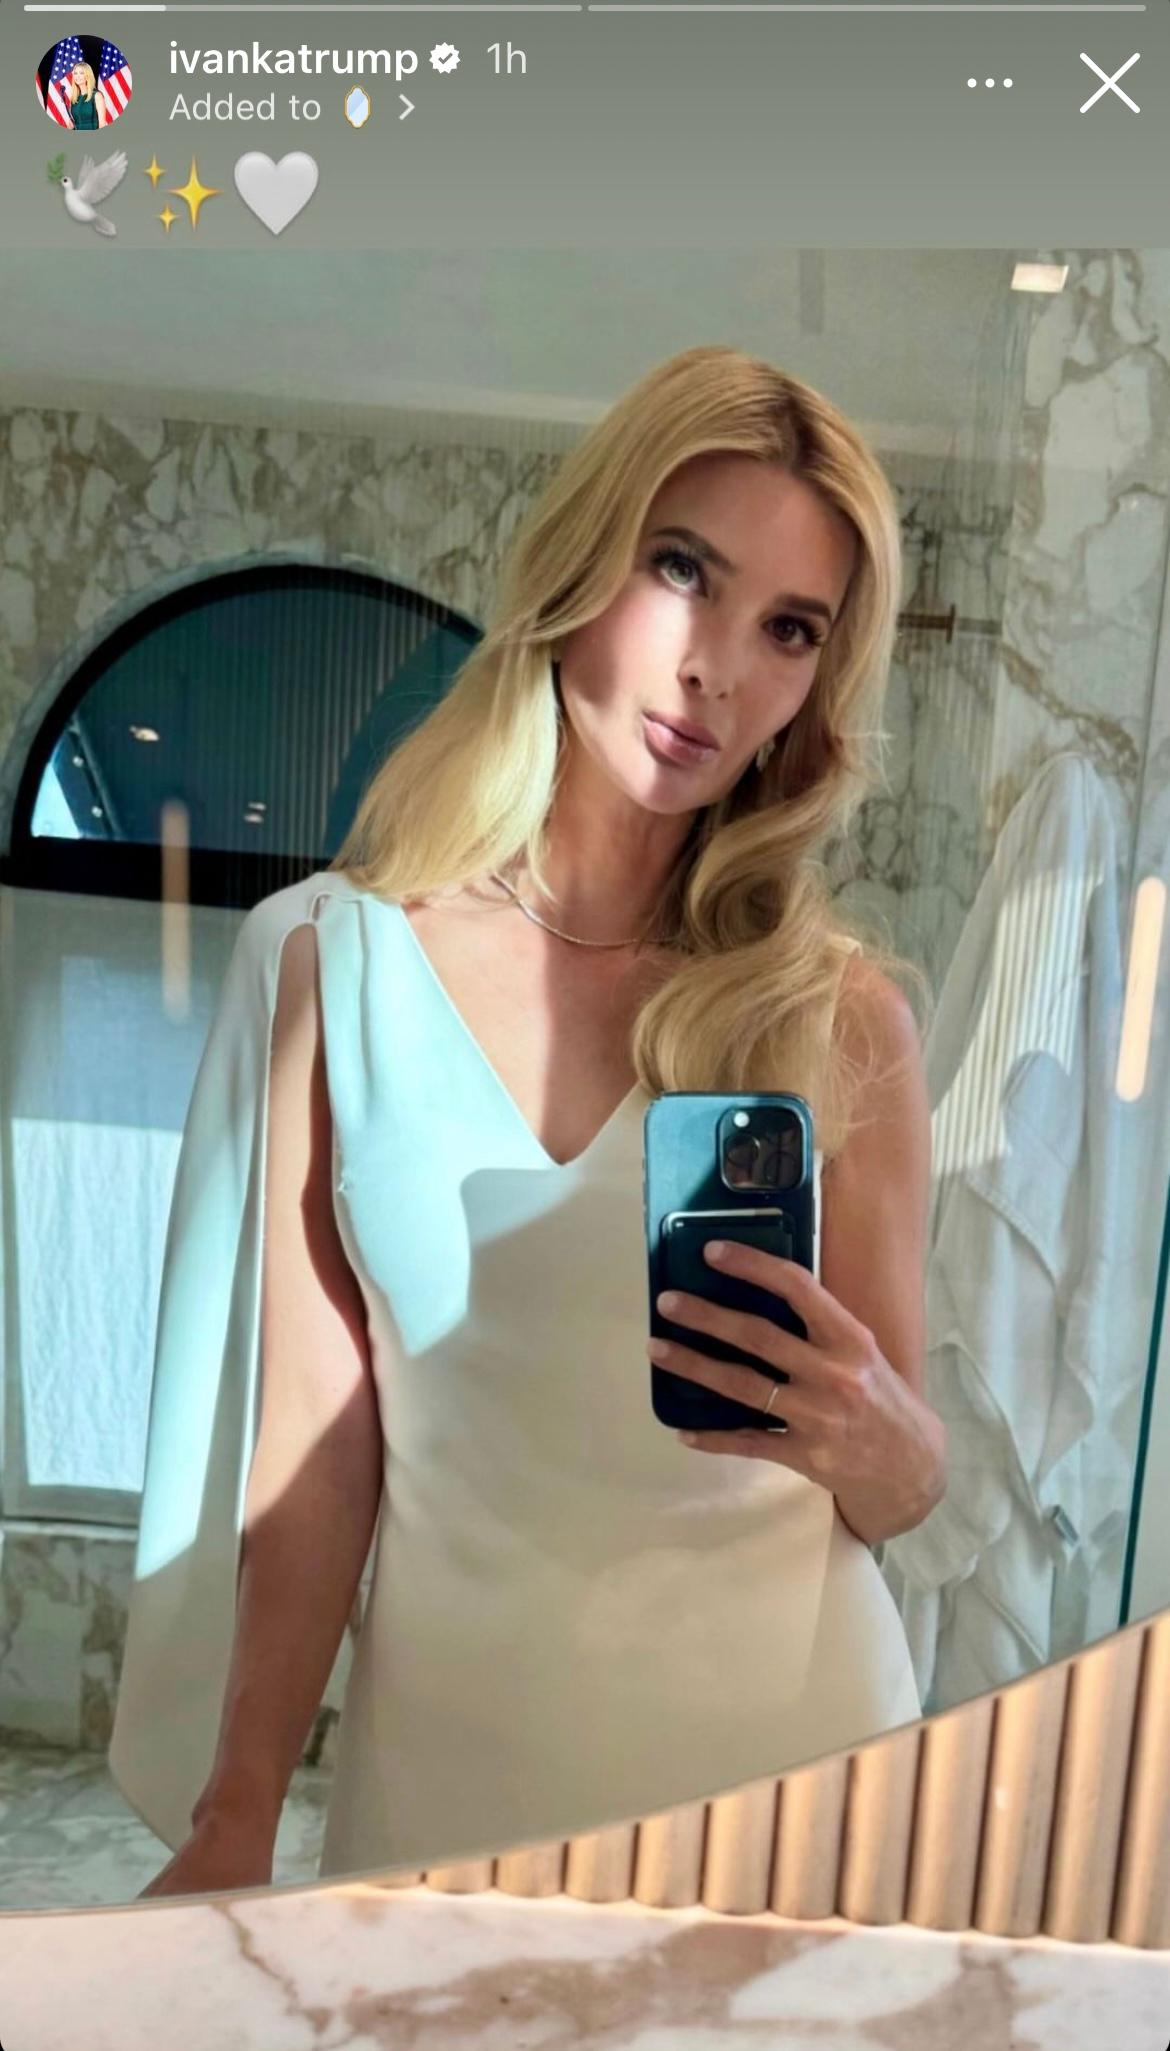 Ivanka Trump Is Sun-kissed In Plunging White Dress In Bathroom Selfie